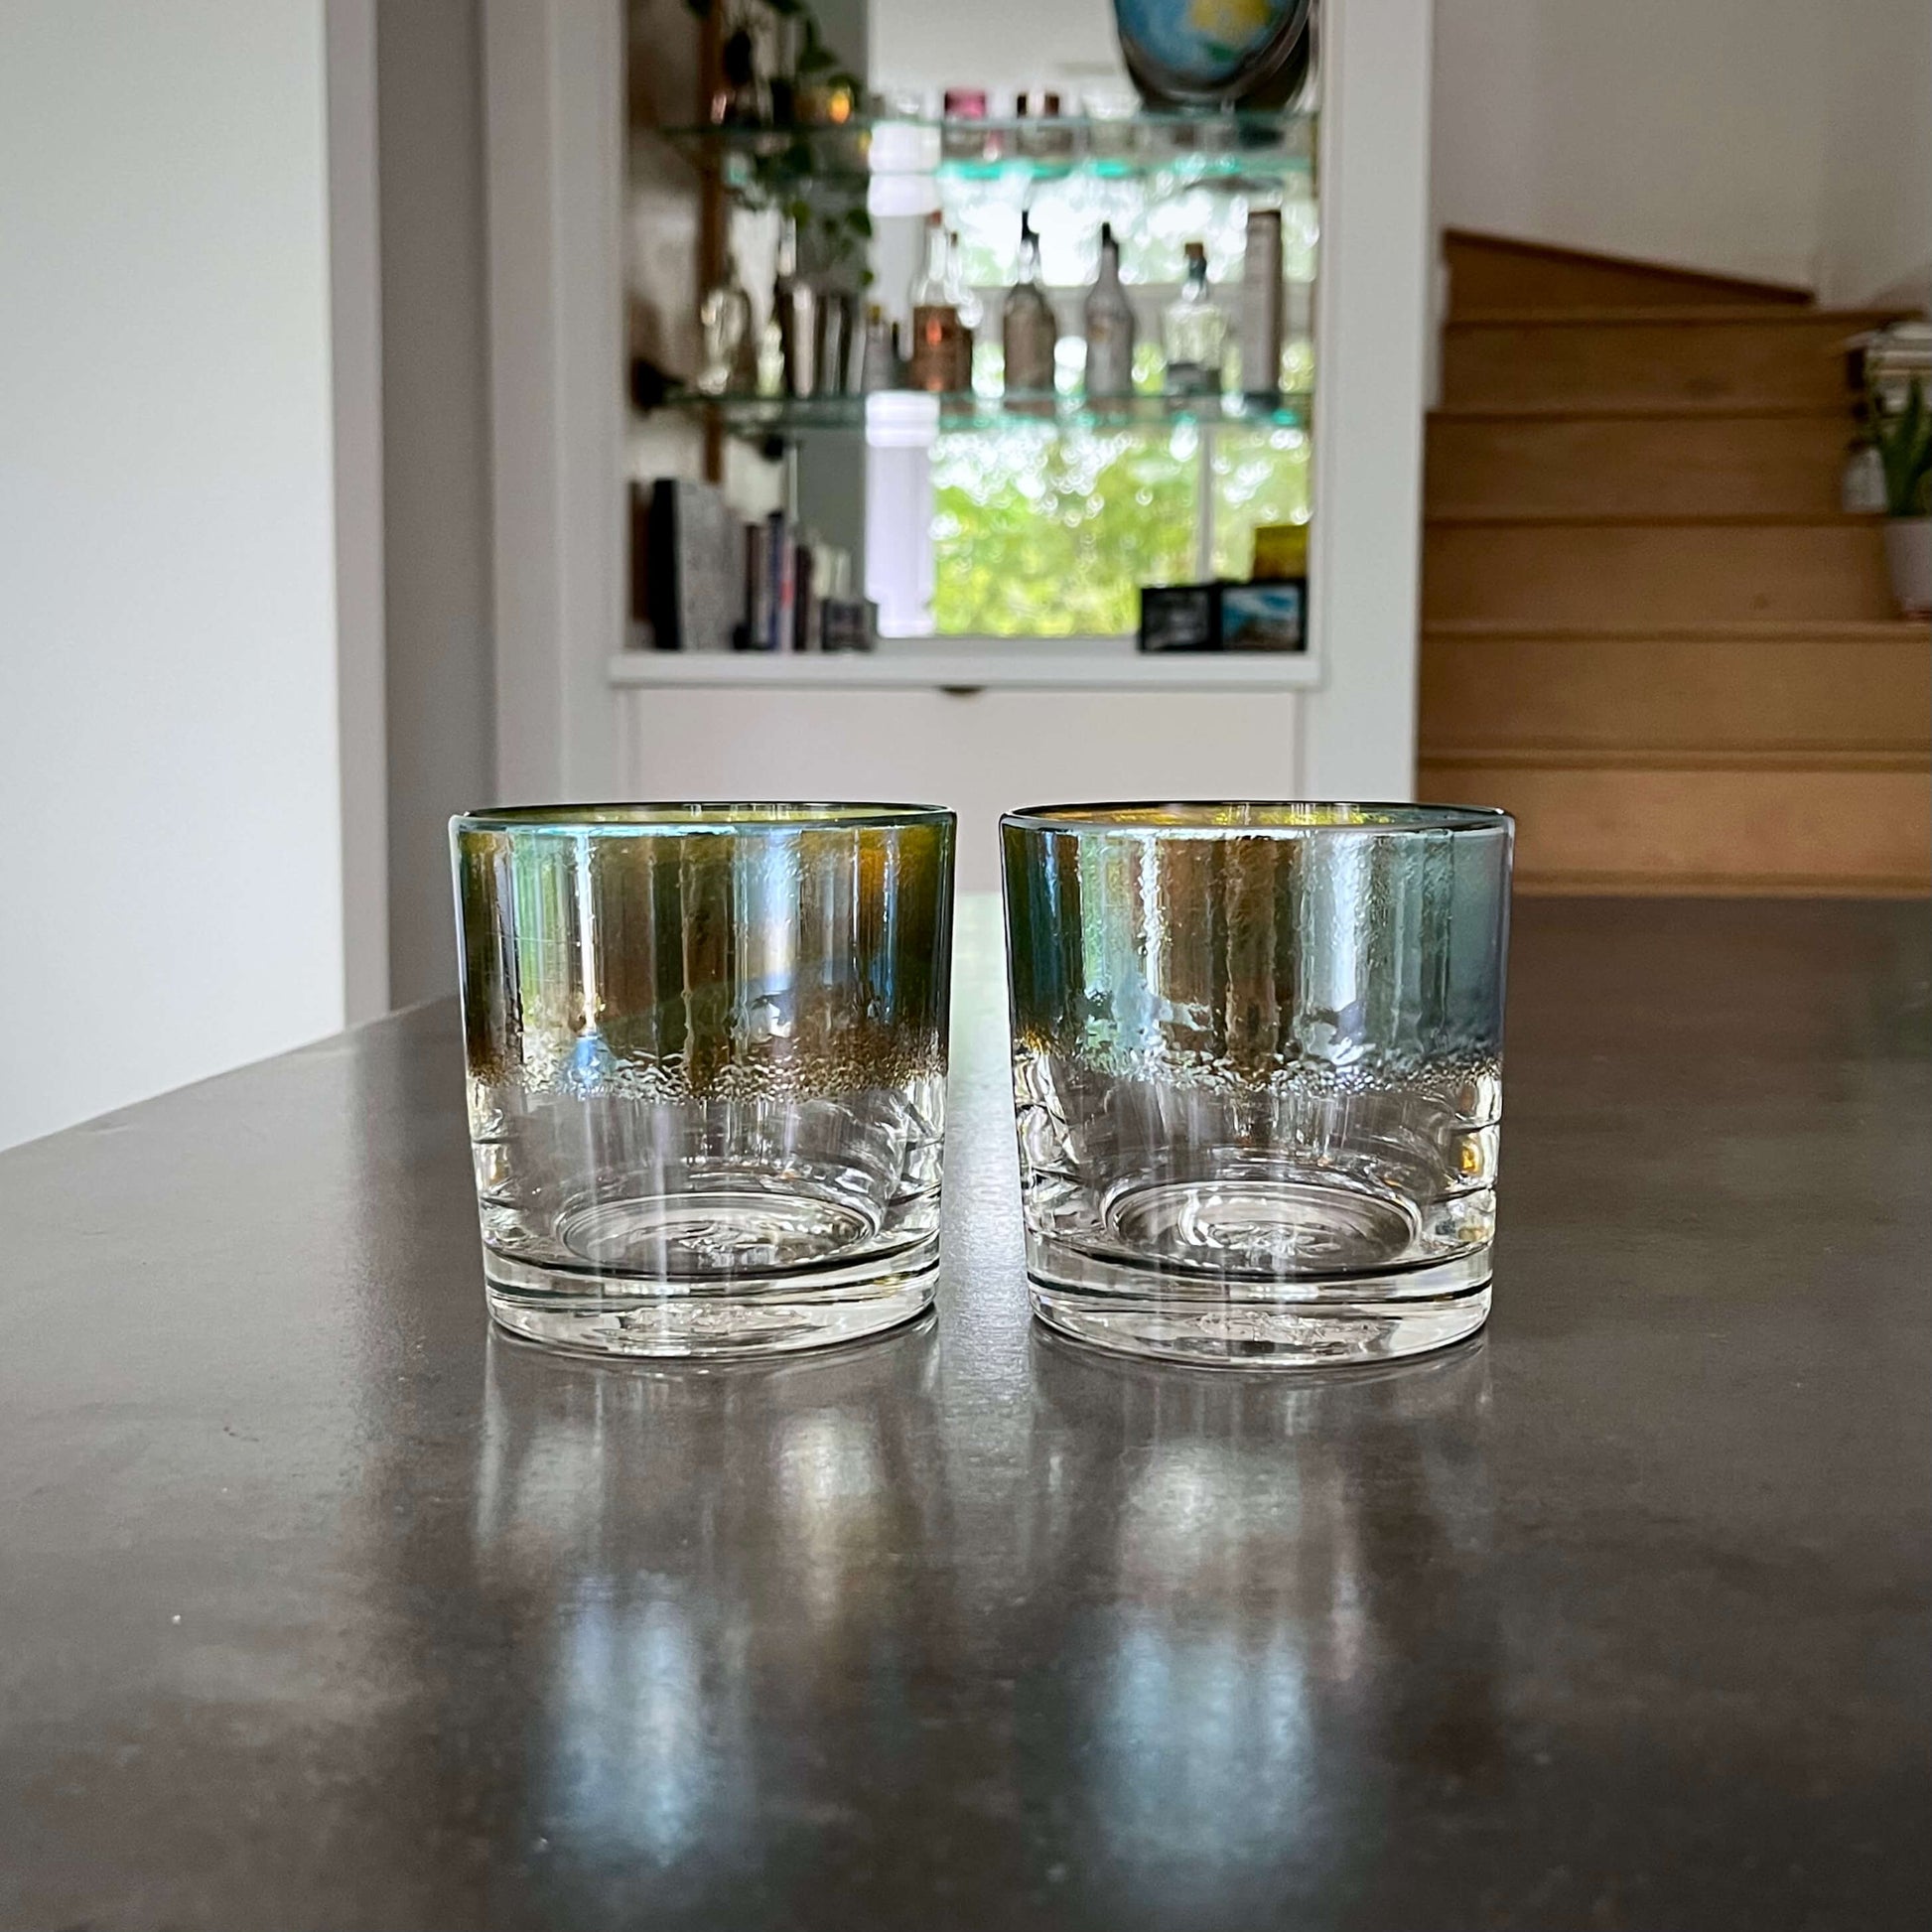 https://shop.bourbonbanter.com/cdn/shop/products/Antique-Silver-Whiskey-Glasses-Teal-Gold-Bar.jpg?v=1650374601&width=1946